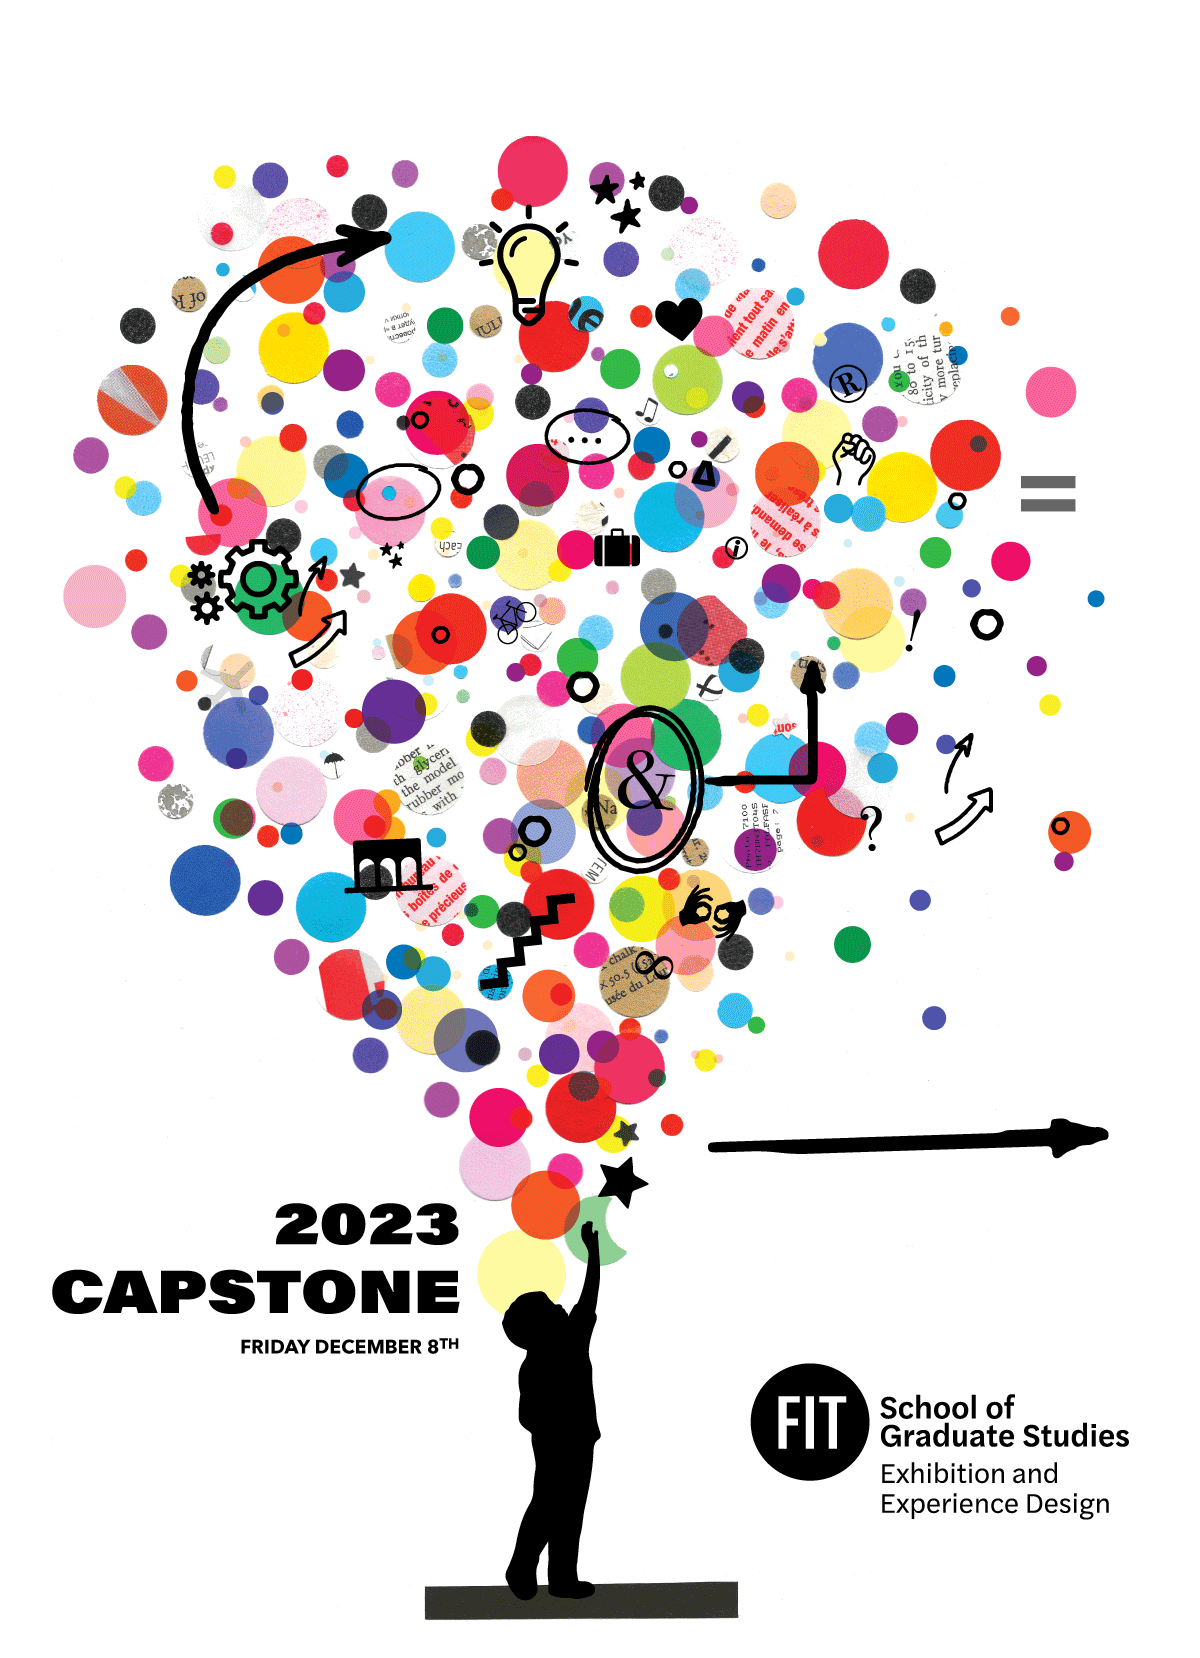 Capstone 2023 invite